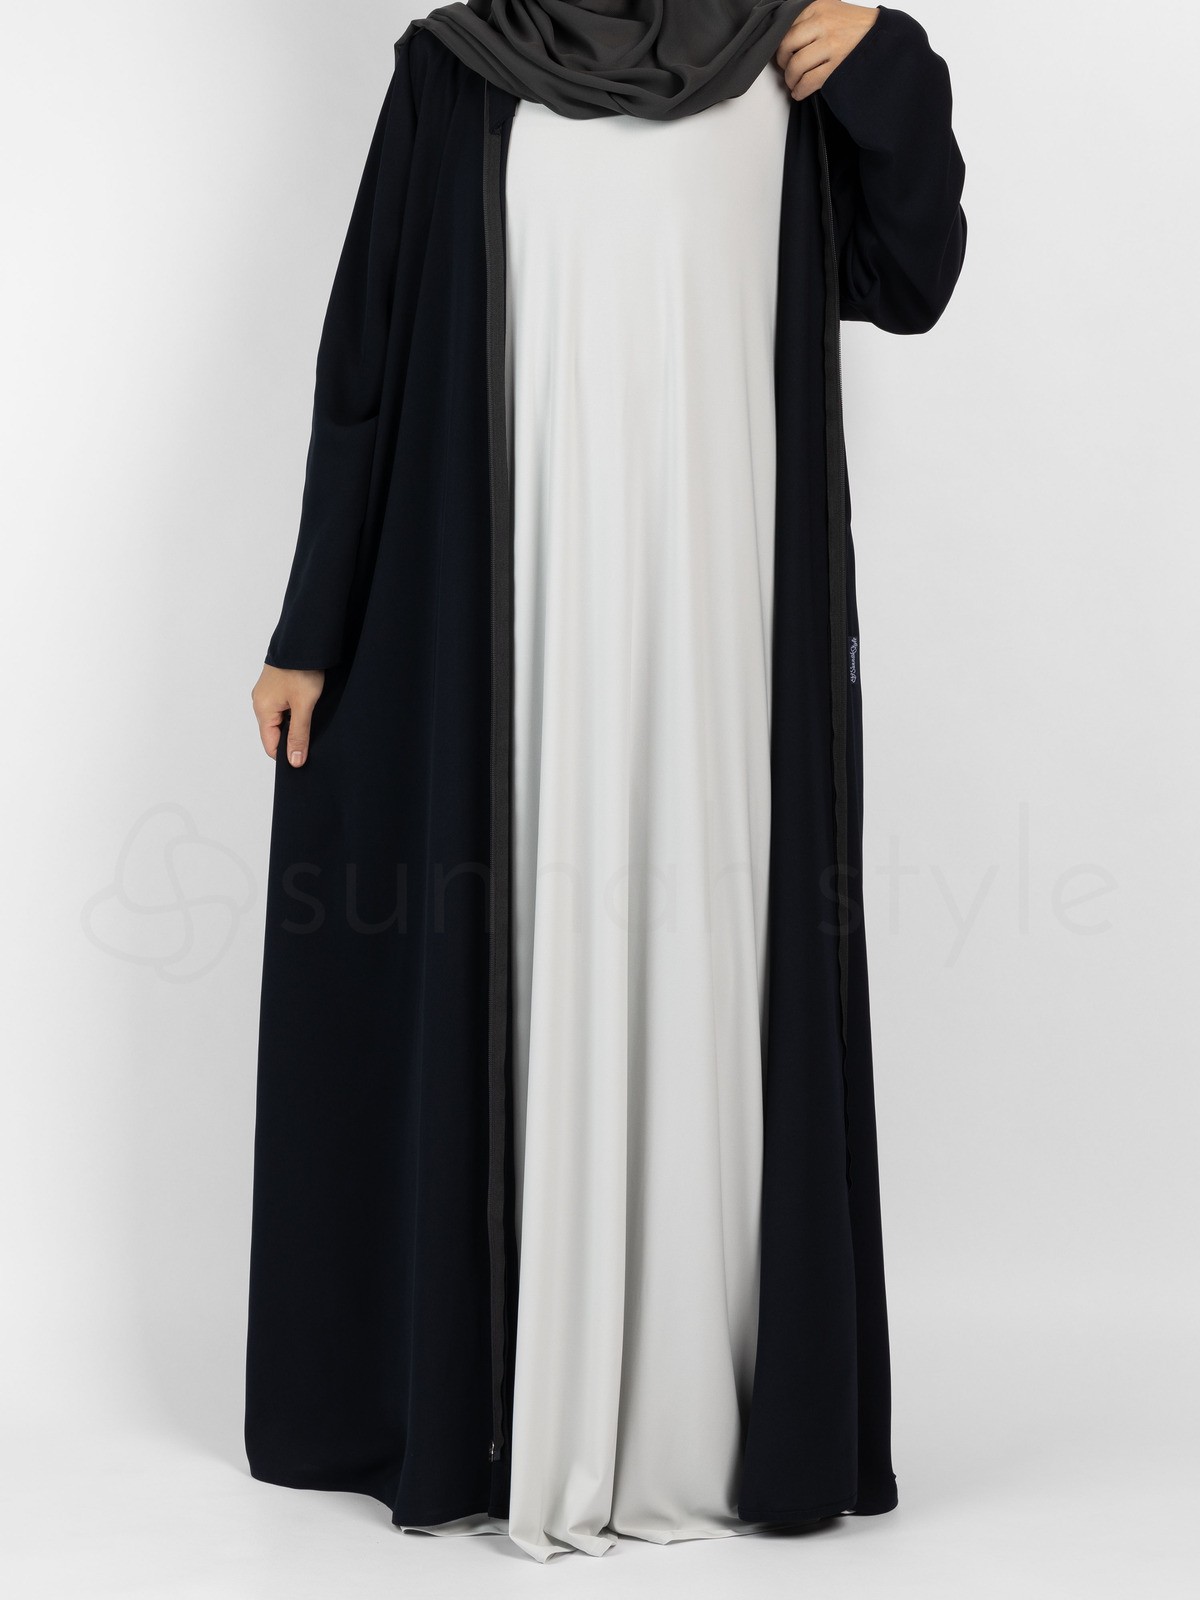 Sunnah Style - Sleeveless Jersey Abaya (Glacier Grey)